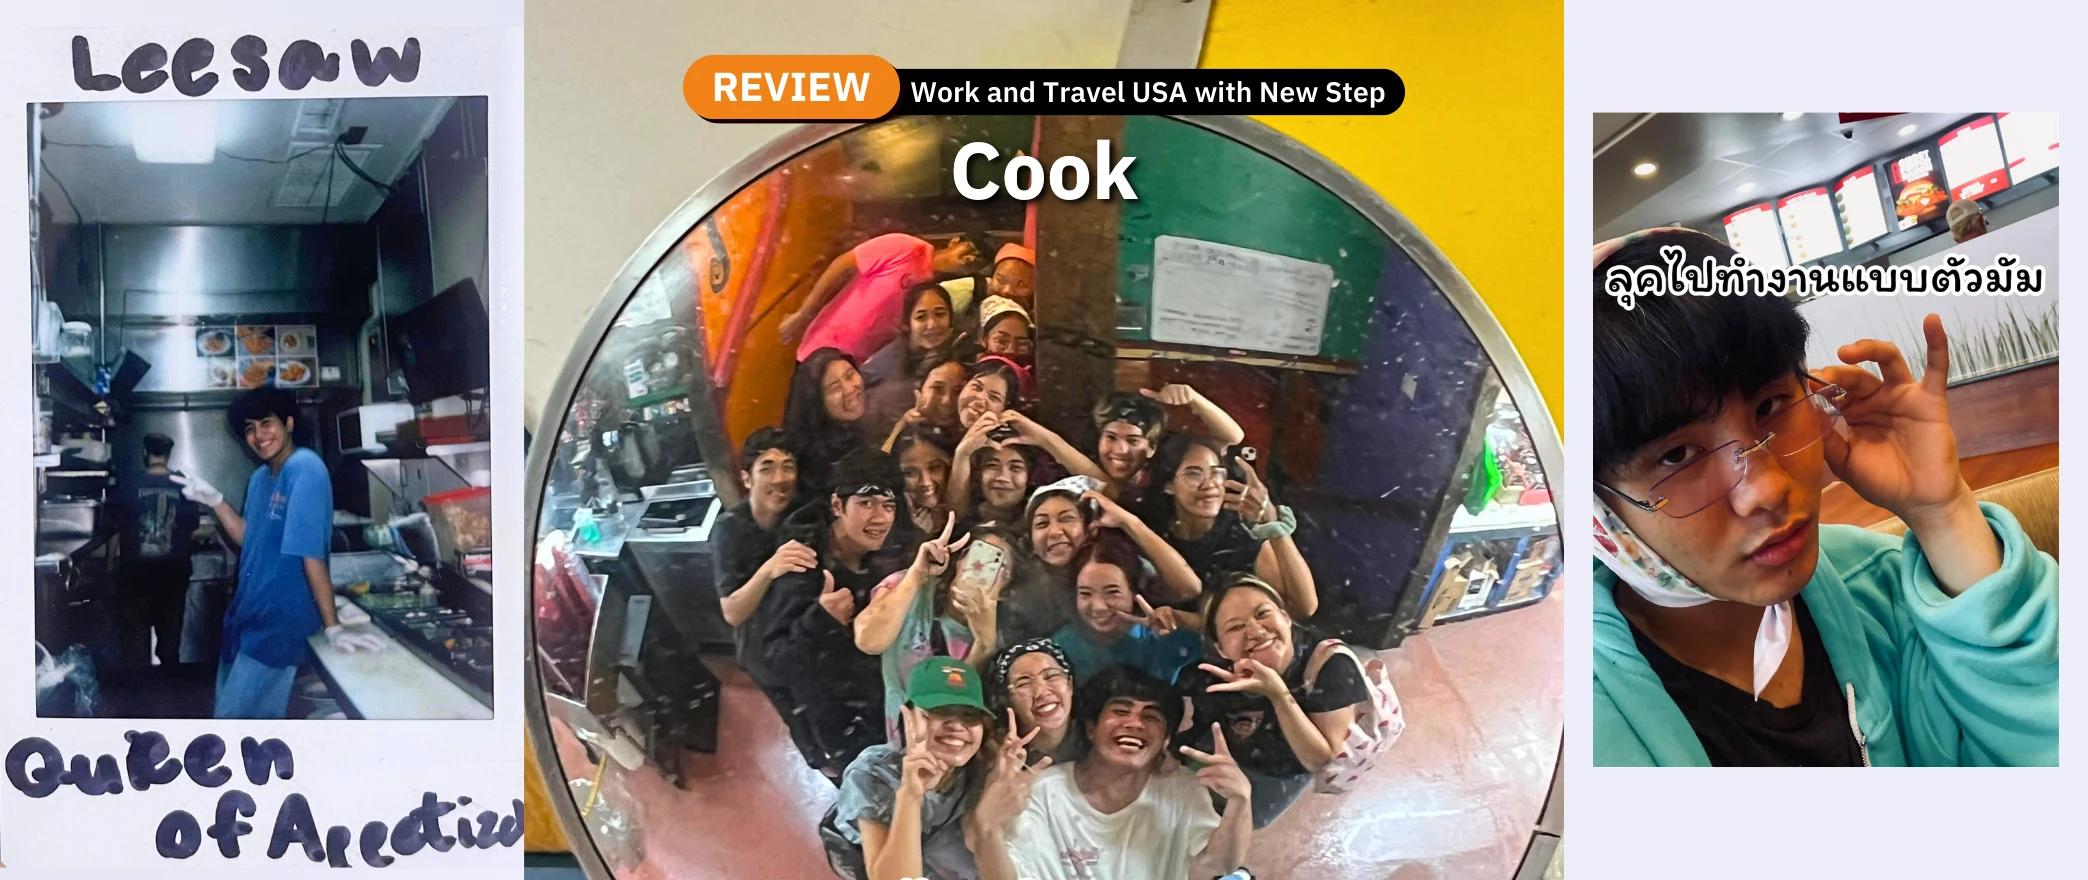 รีวิว review New Step Fudpucker Work and Travel Destin Florida wat2023 cook food team apertizer ทำงานต่างประเทศ แลกเปลี่ยนวัฒนธรรม ทำงานปิดเทอม ฝึกภาษา อังกฤษ ทะเล ชายหาด